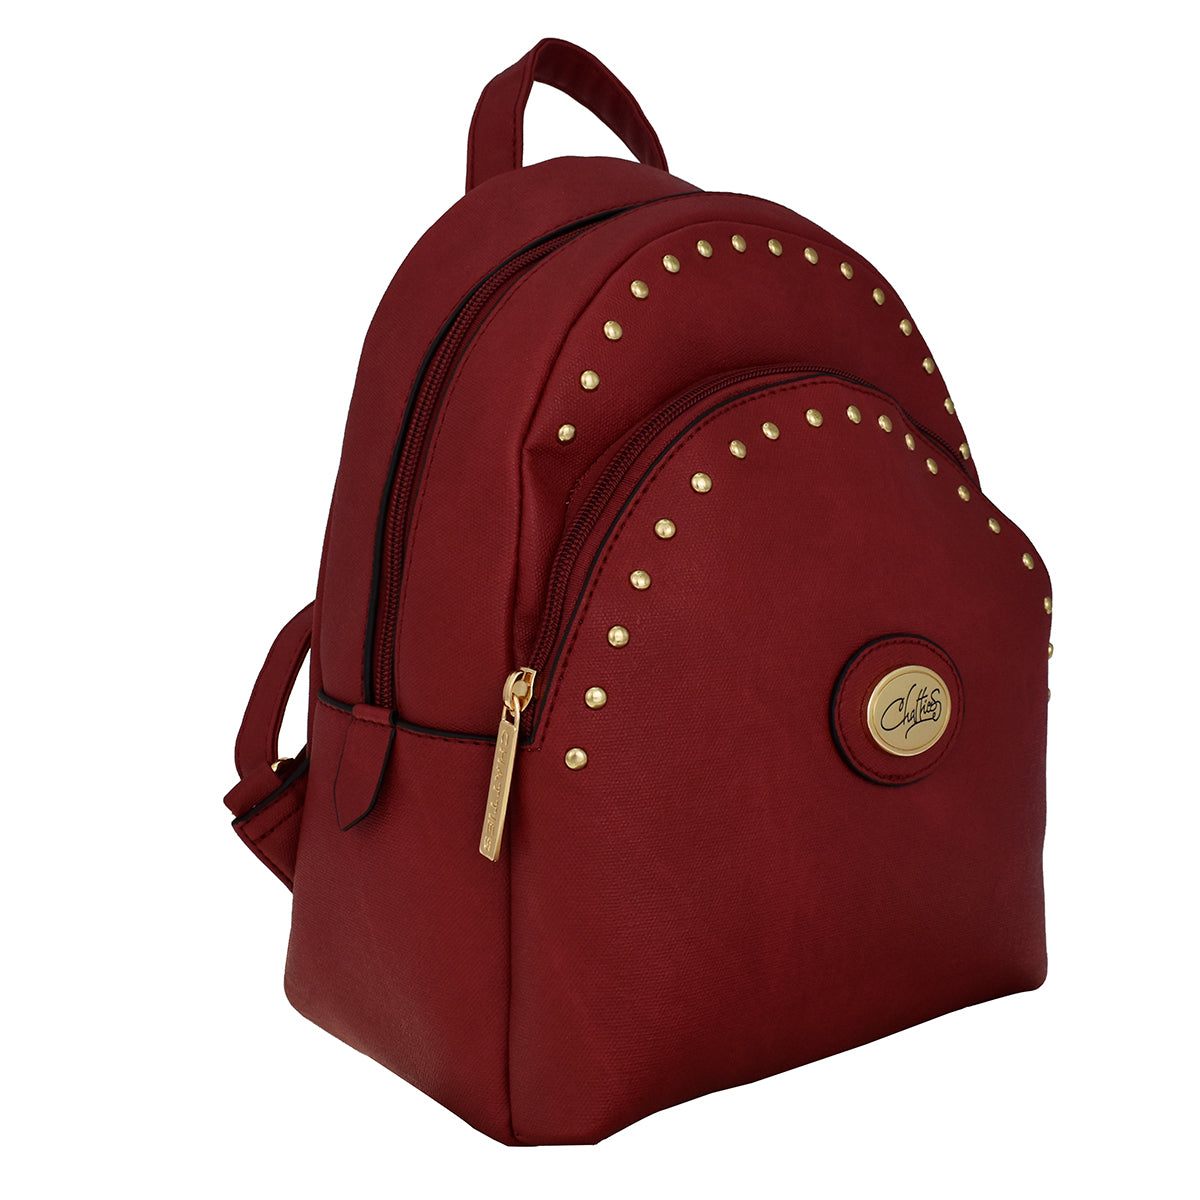 Backpack [Chatties] con doble bolsa y diseño de estoperoles color rojo